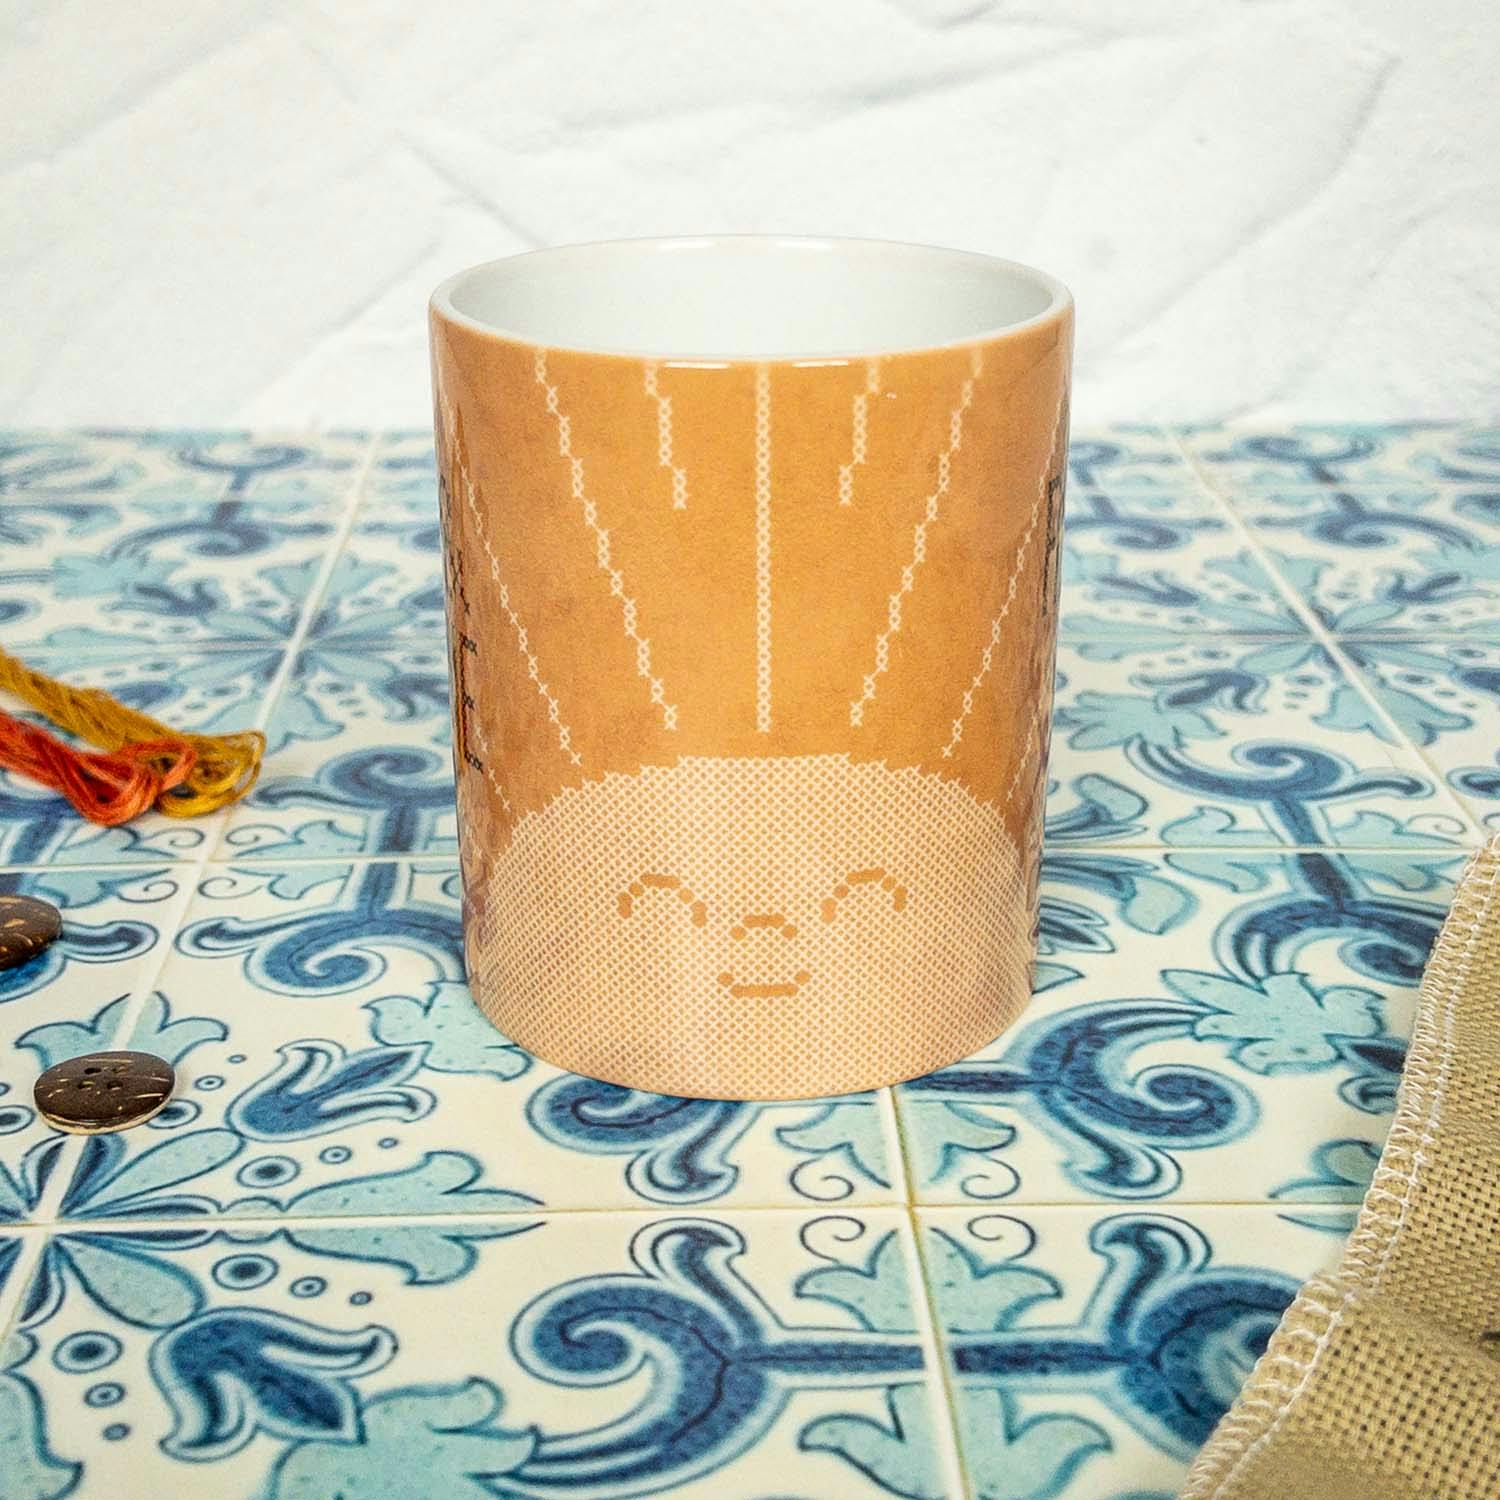 Rise and Shine Ceramic Mug